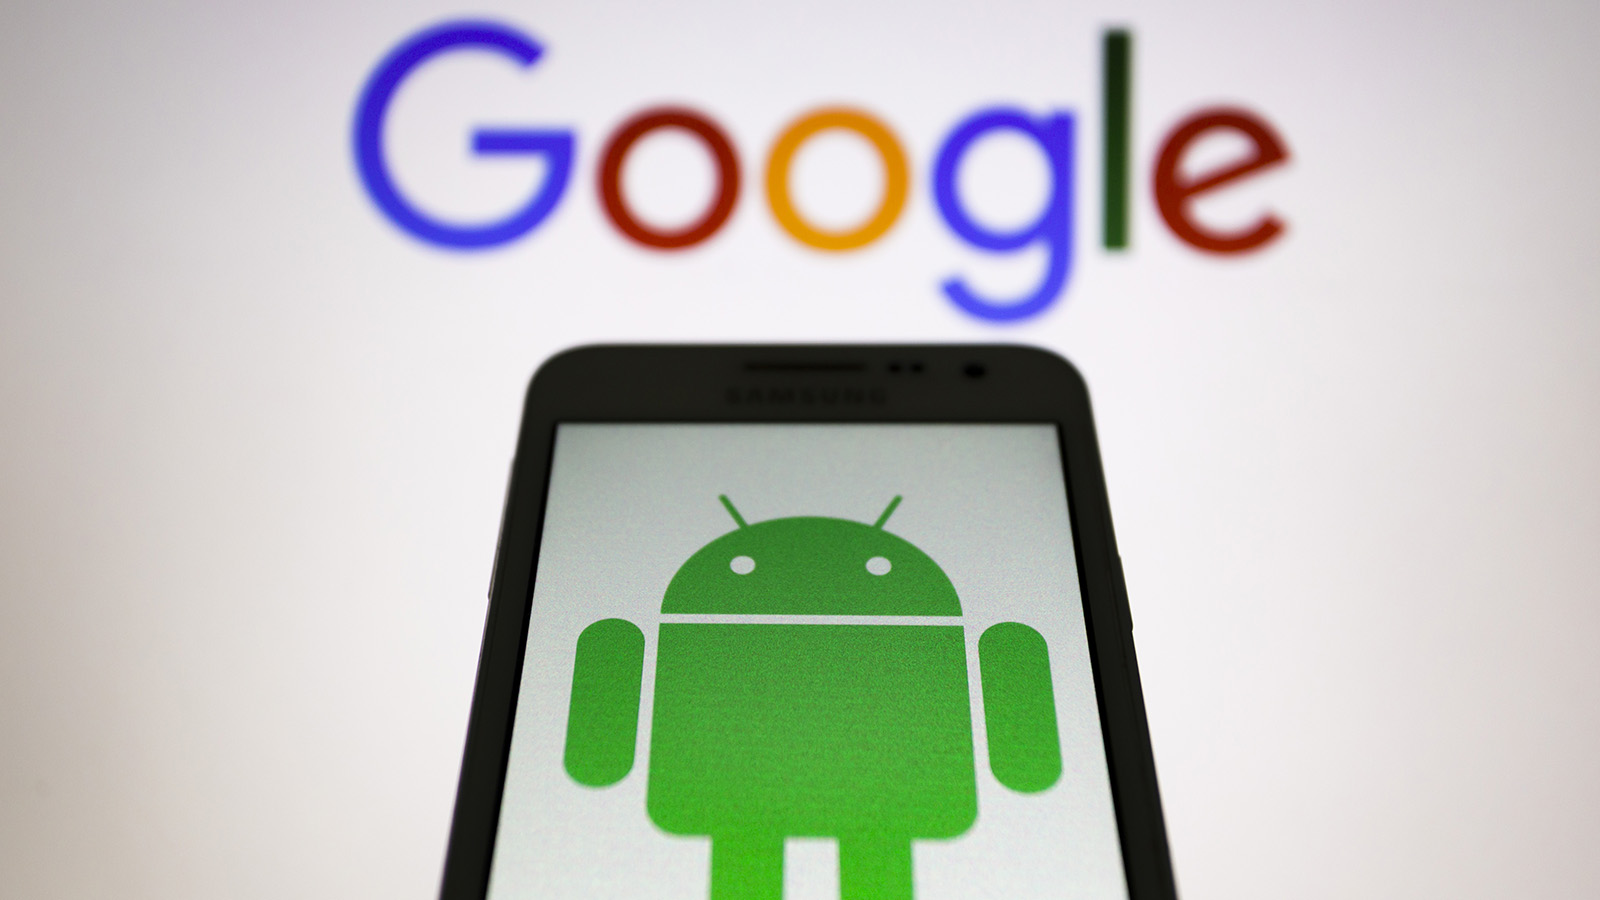 Google вслед за Apple ограничит рекламодателям доступ к данным пользователей Android